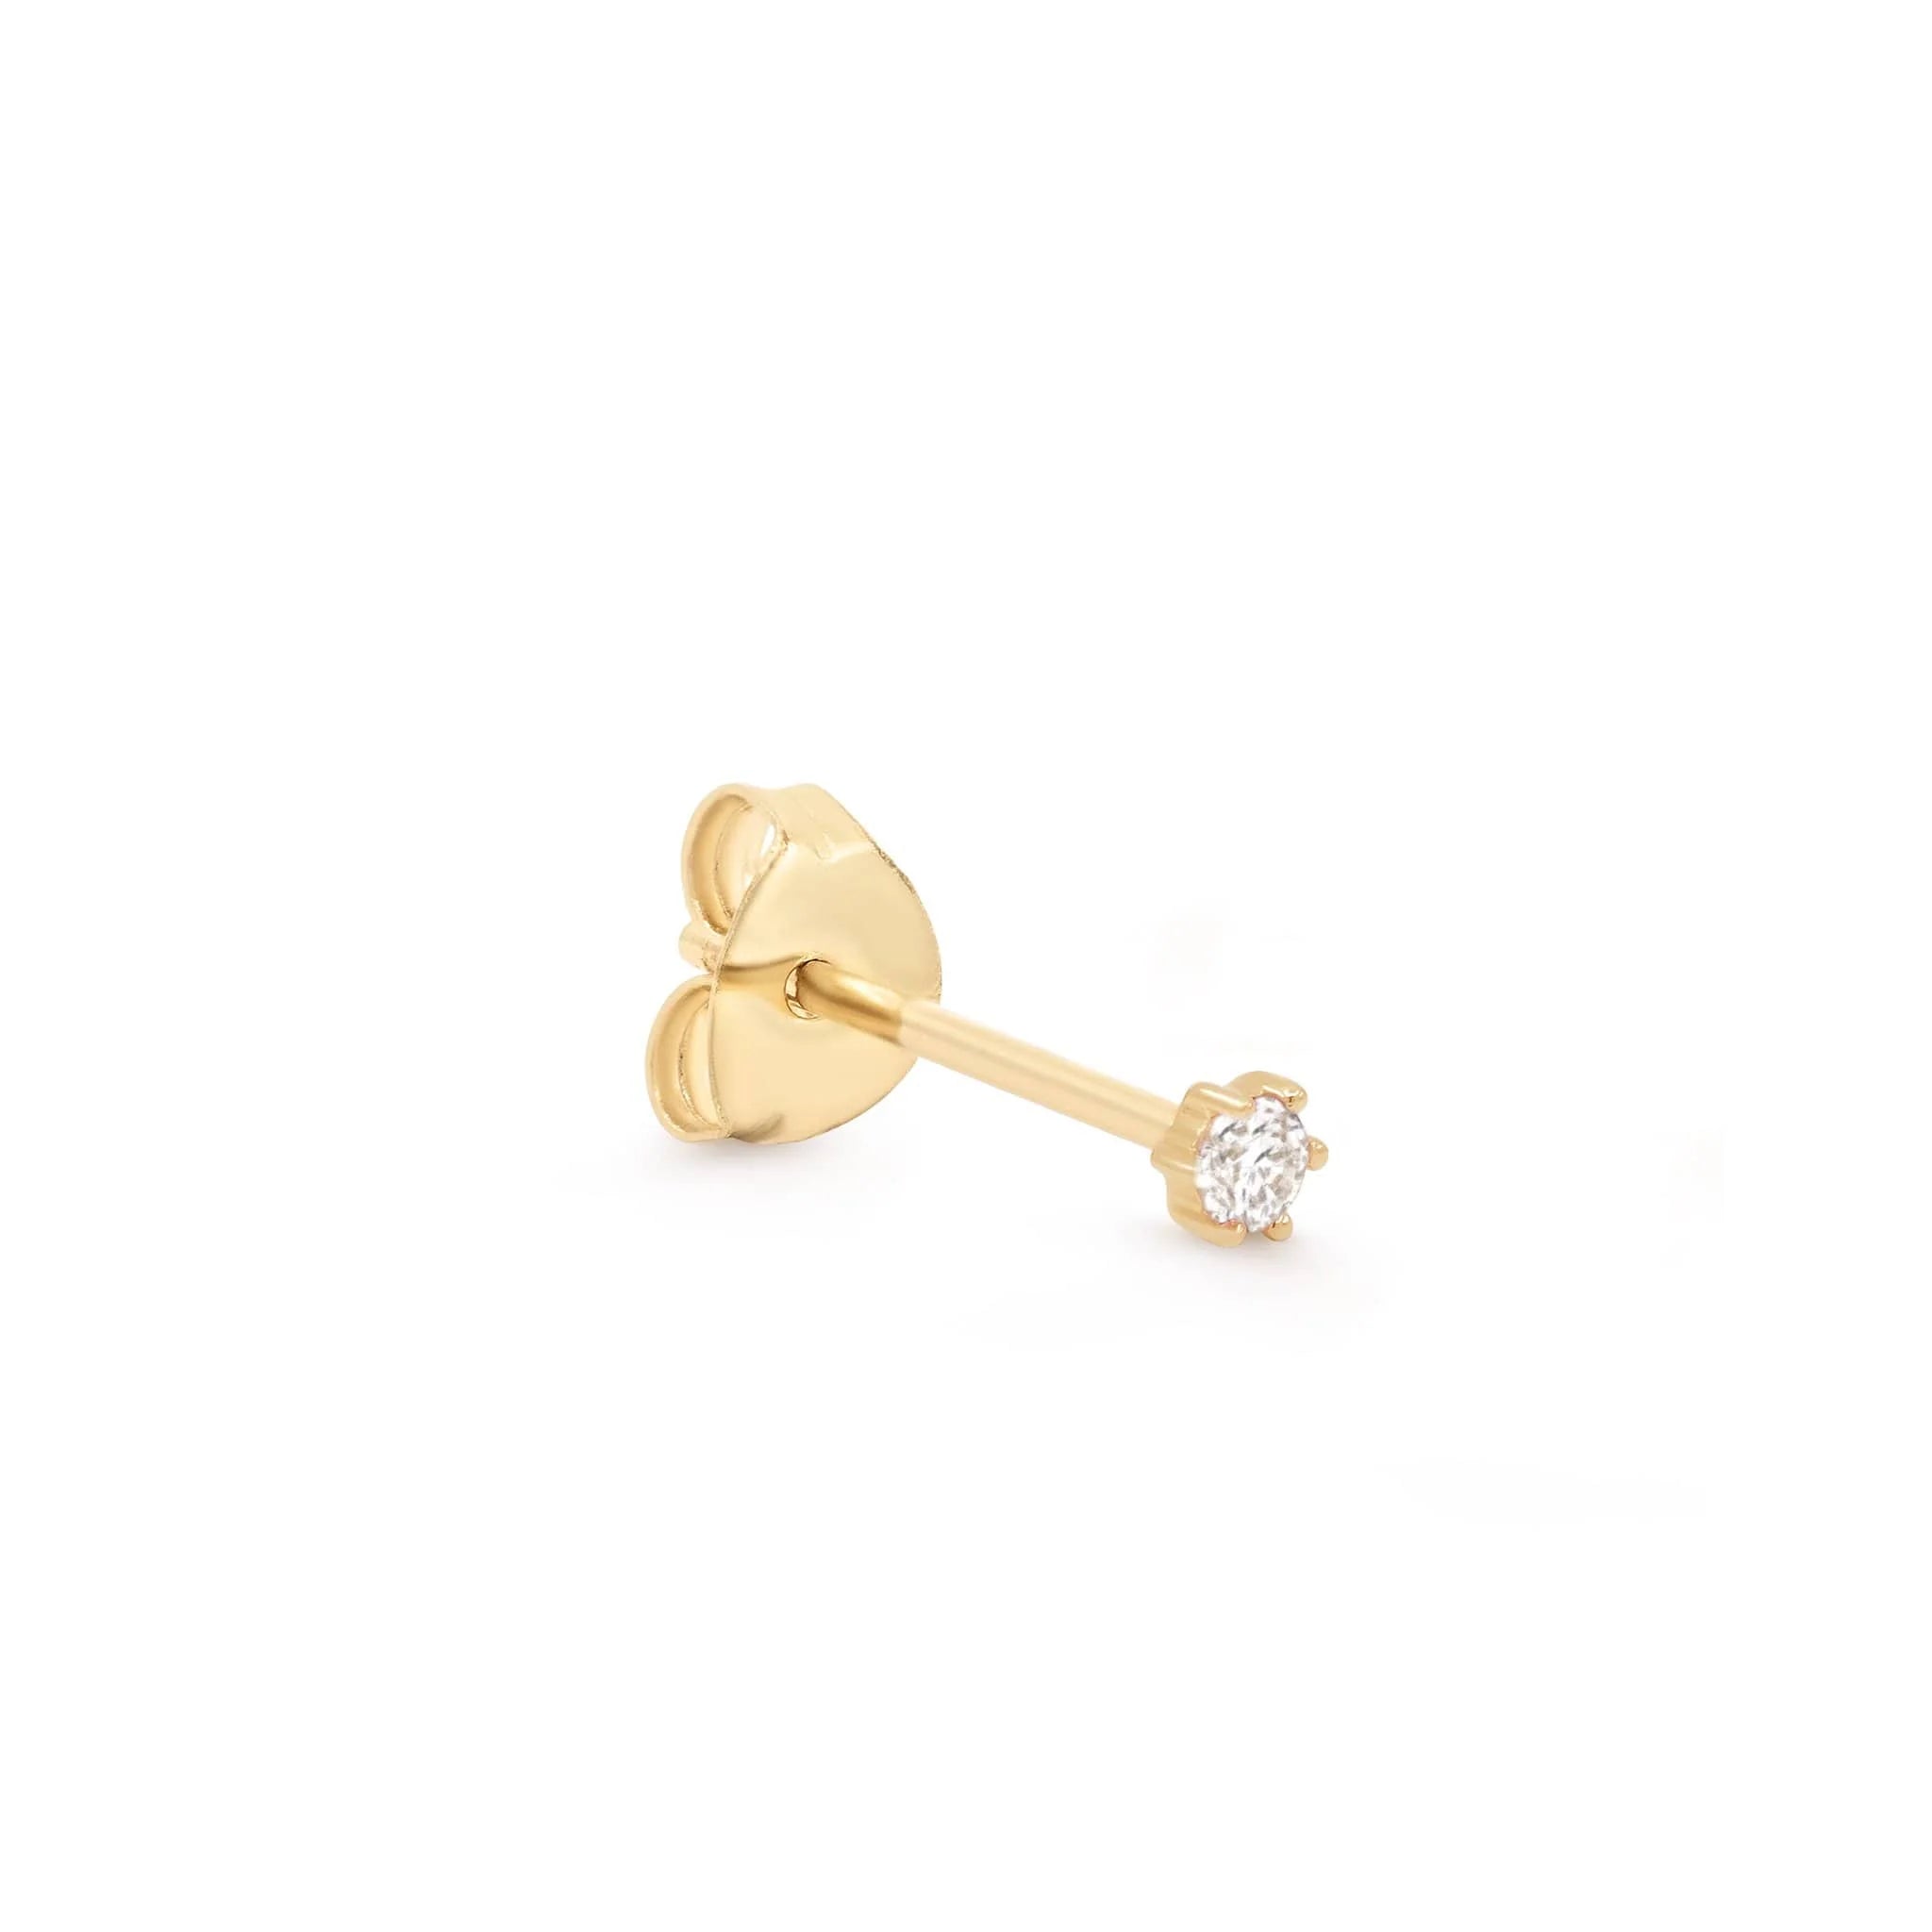 By Charlotte 14k Gold Sweet Droplet Diamond Earring - Single